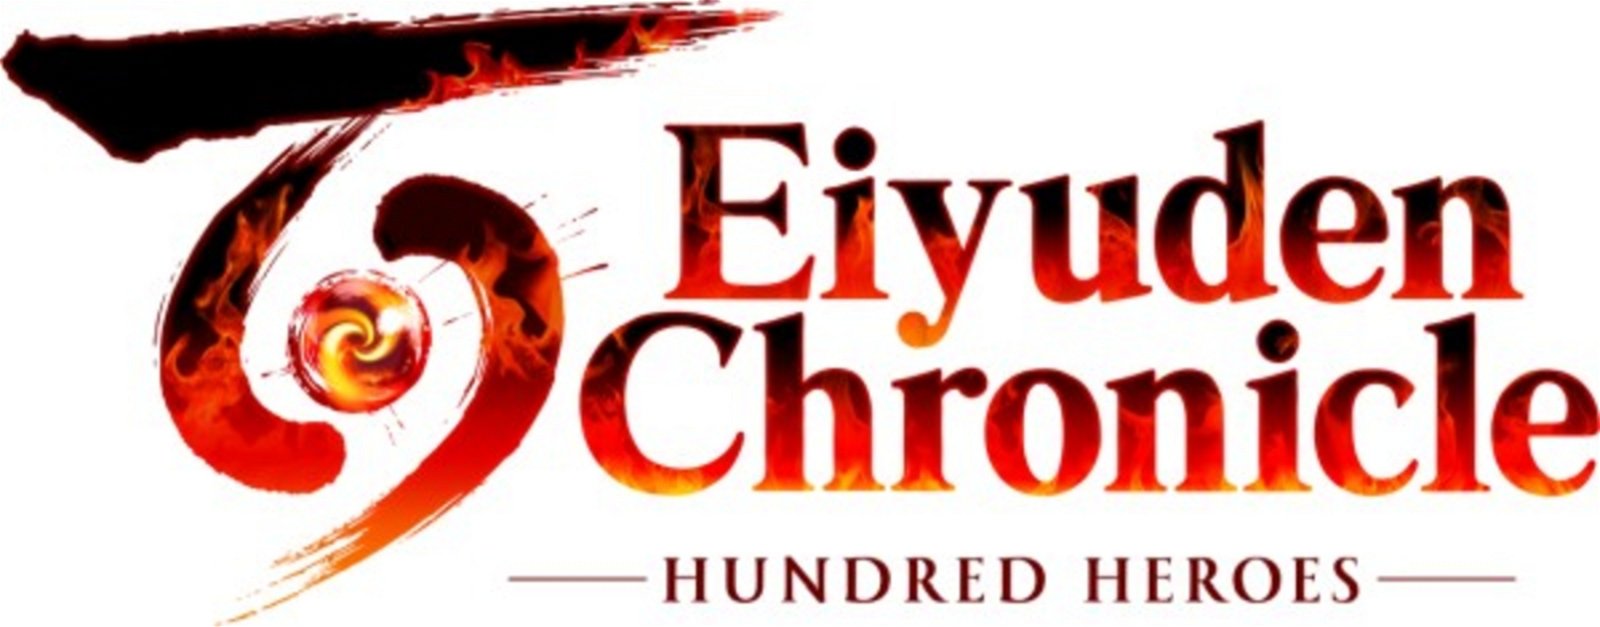 Anunciado Eiyuden Chronicle: Hundred Heroes, sucesor espiritual de Suikoden